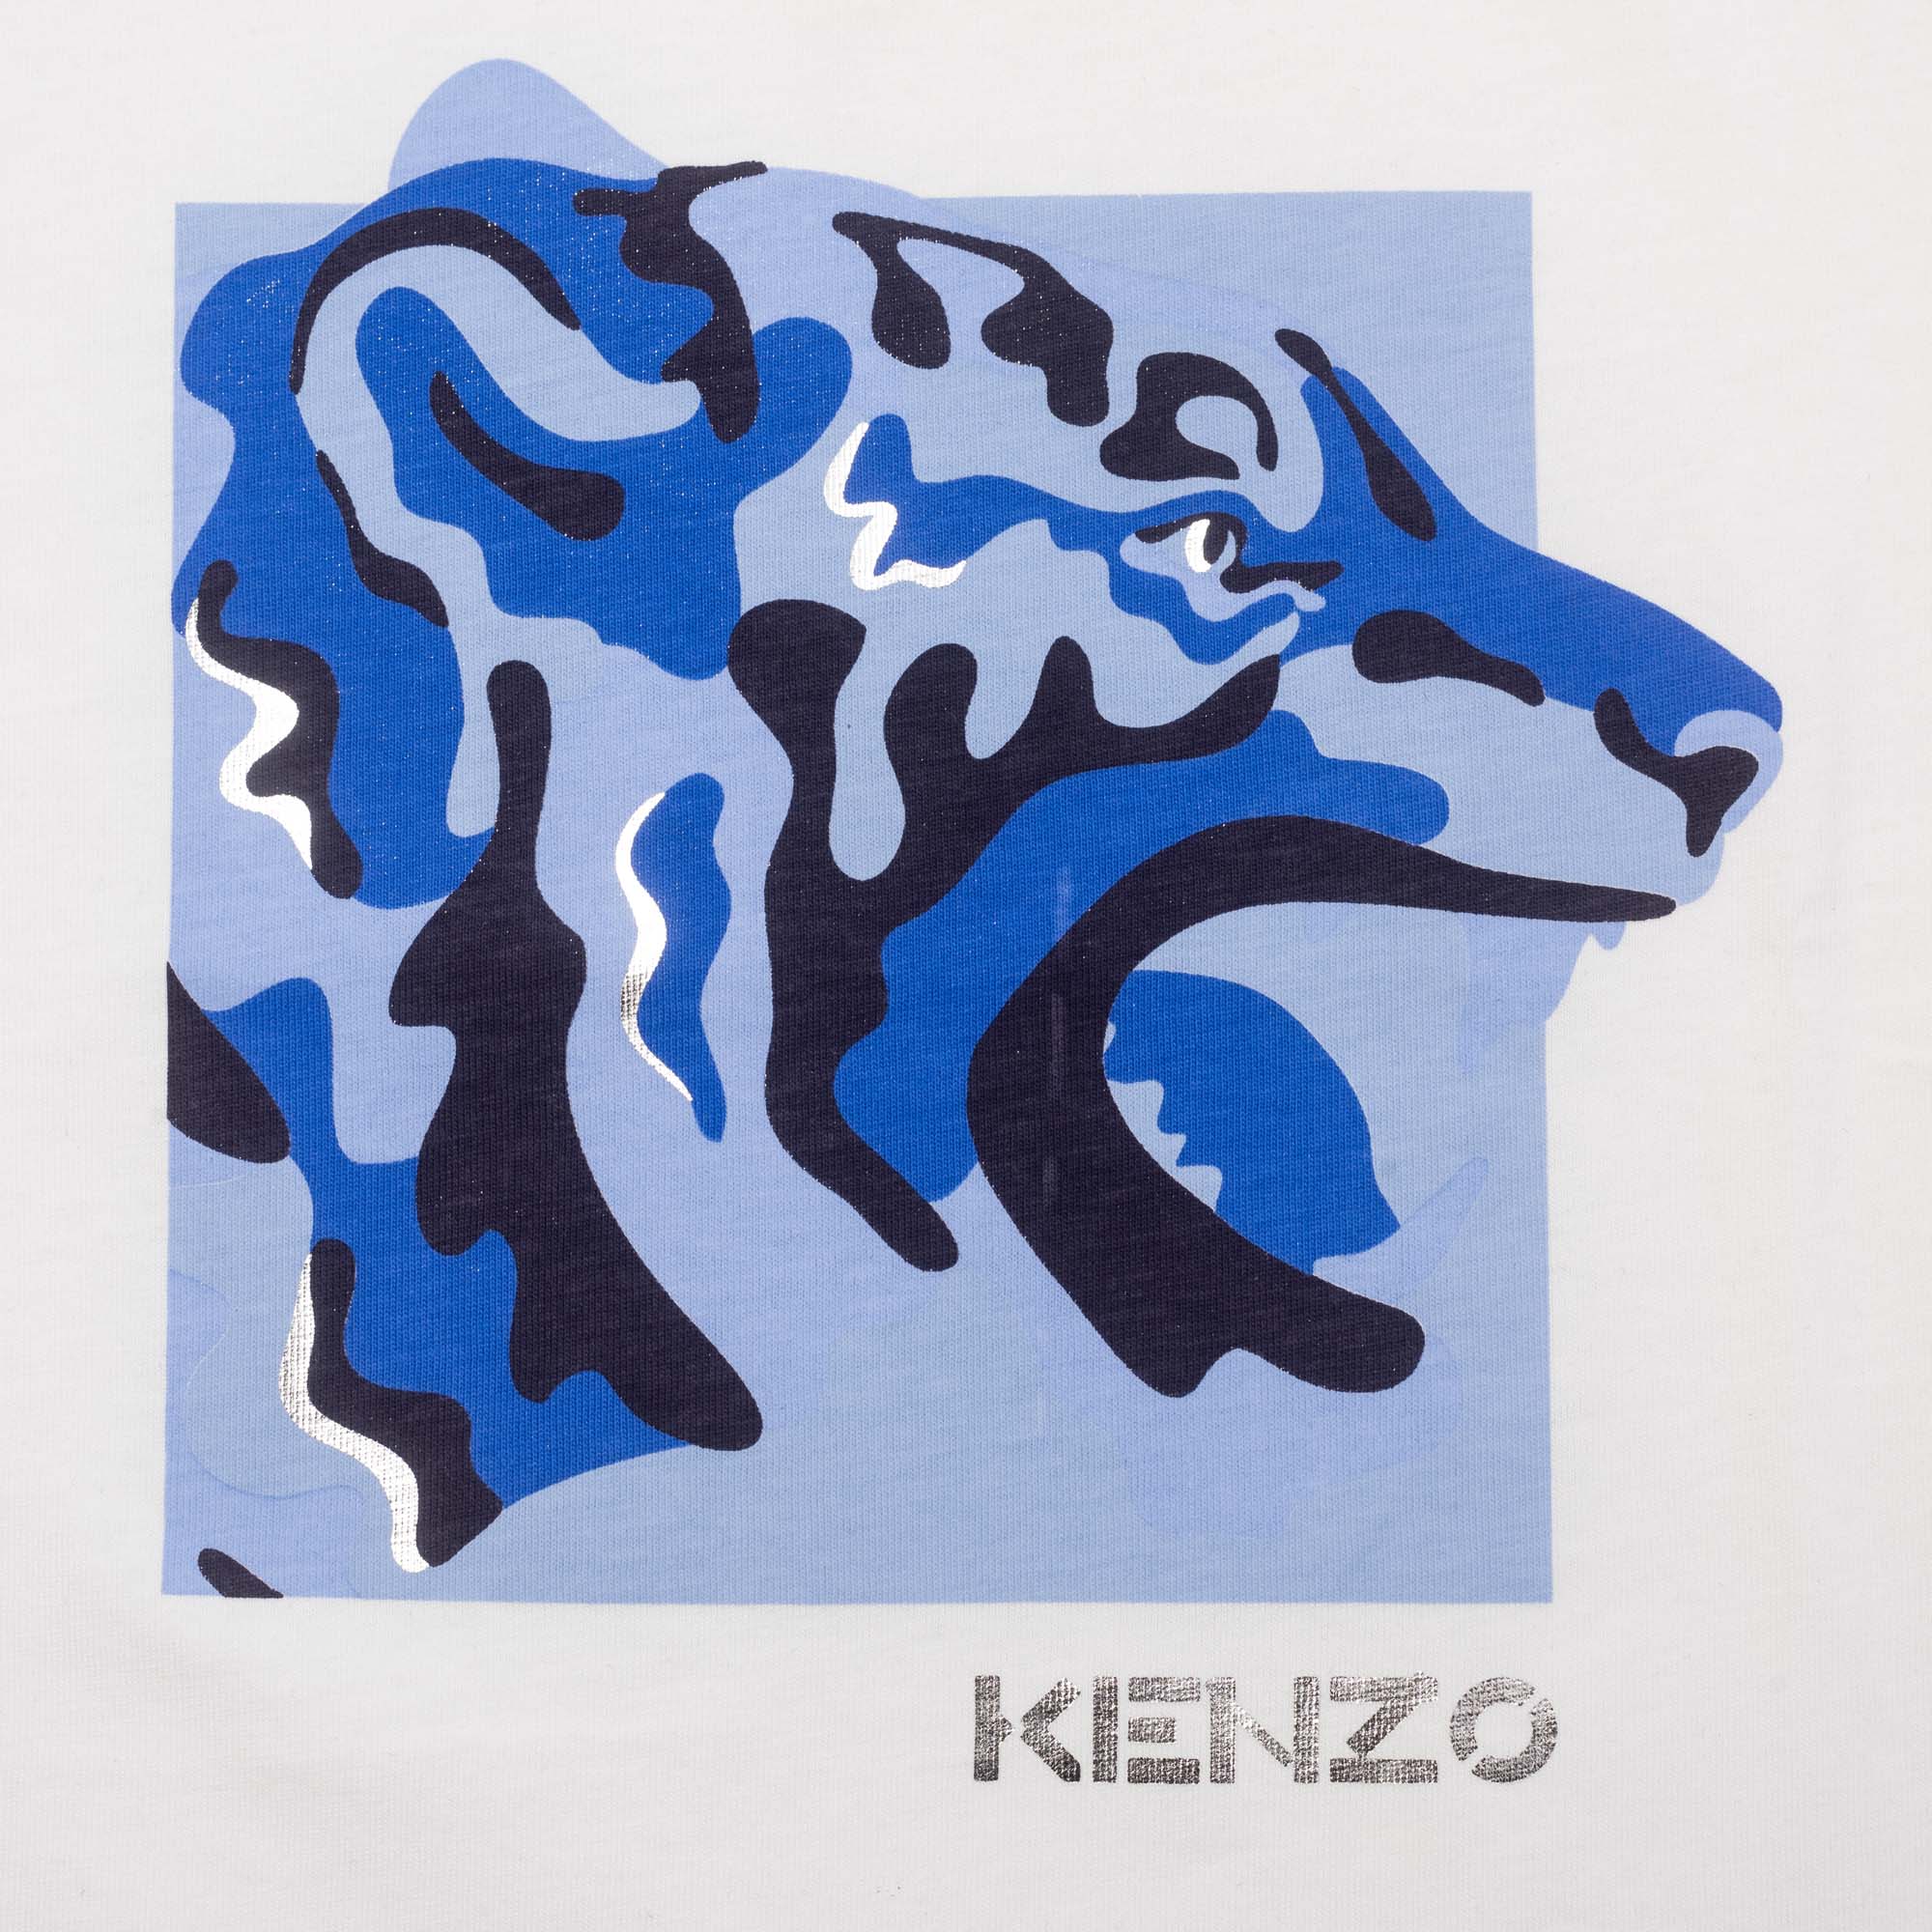 T-shirt à manches longues KENZO KIDS pour FILLE